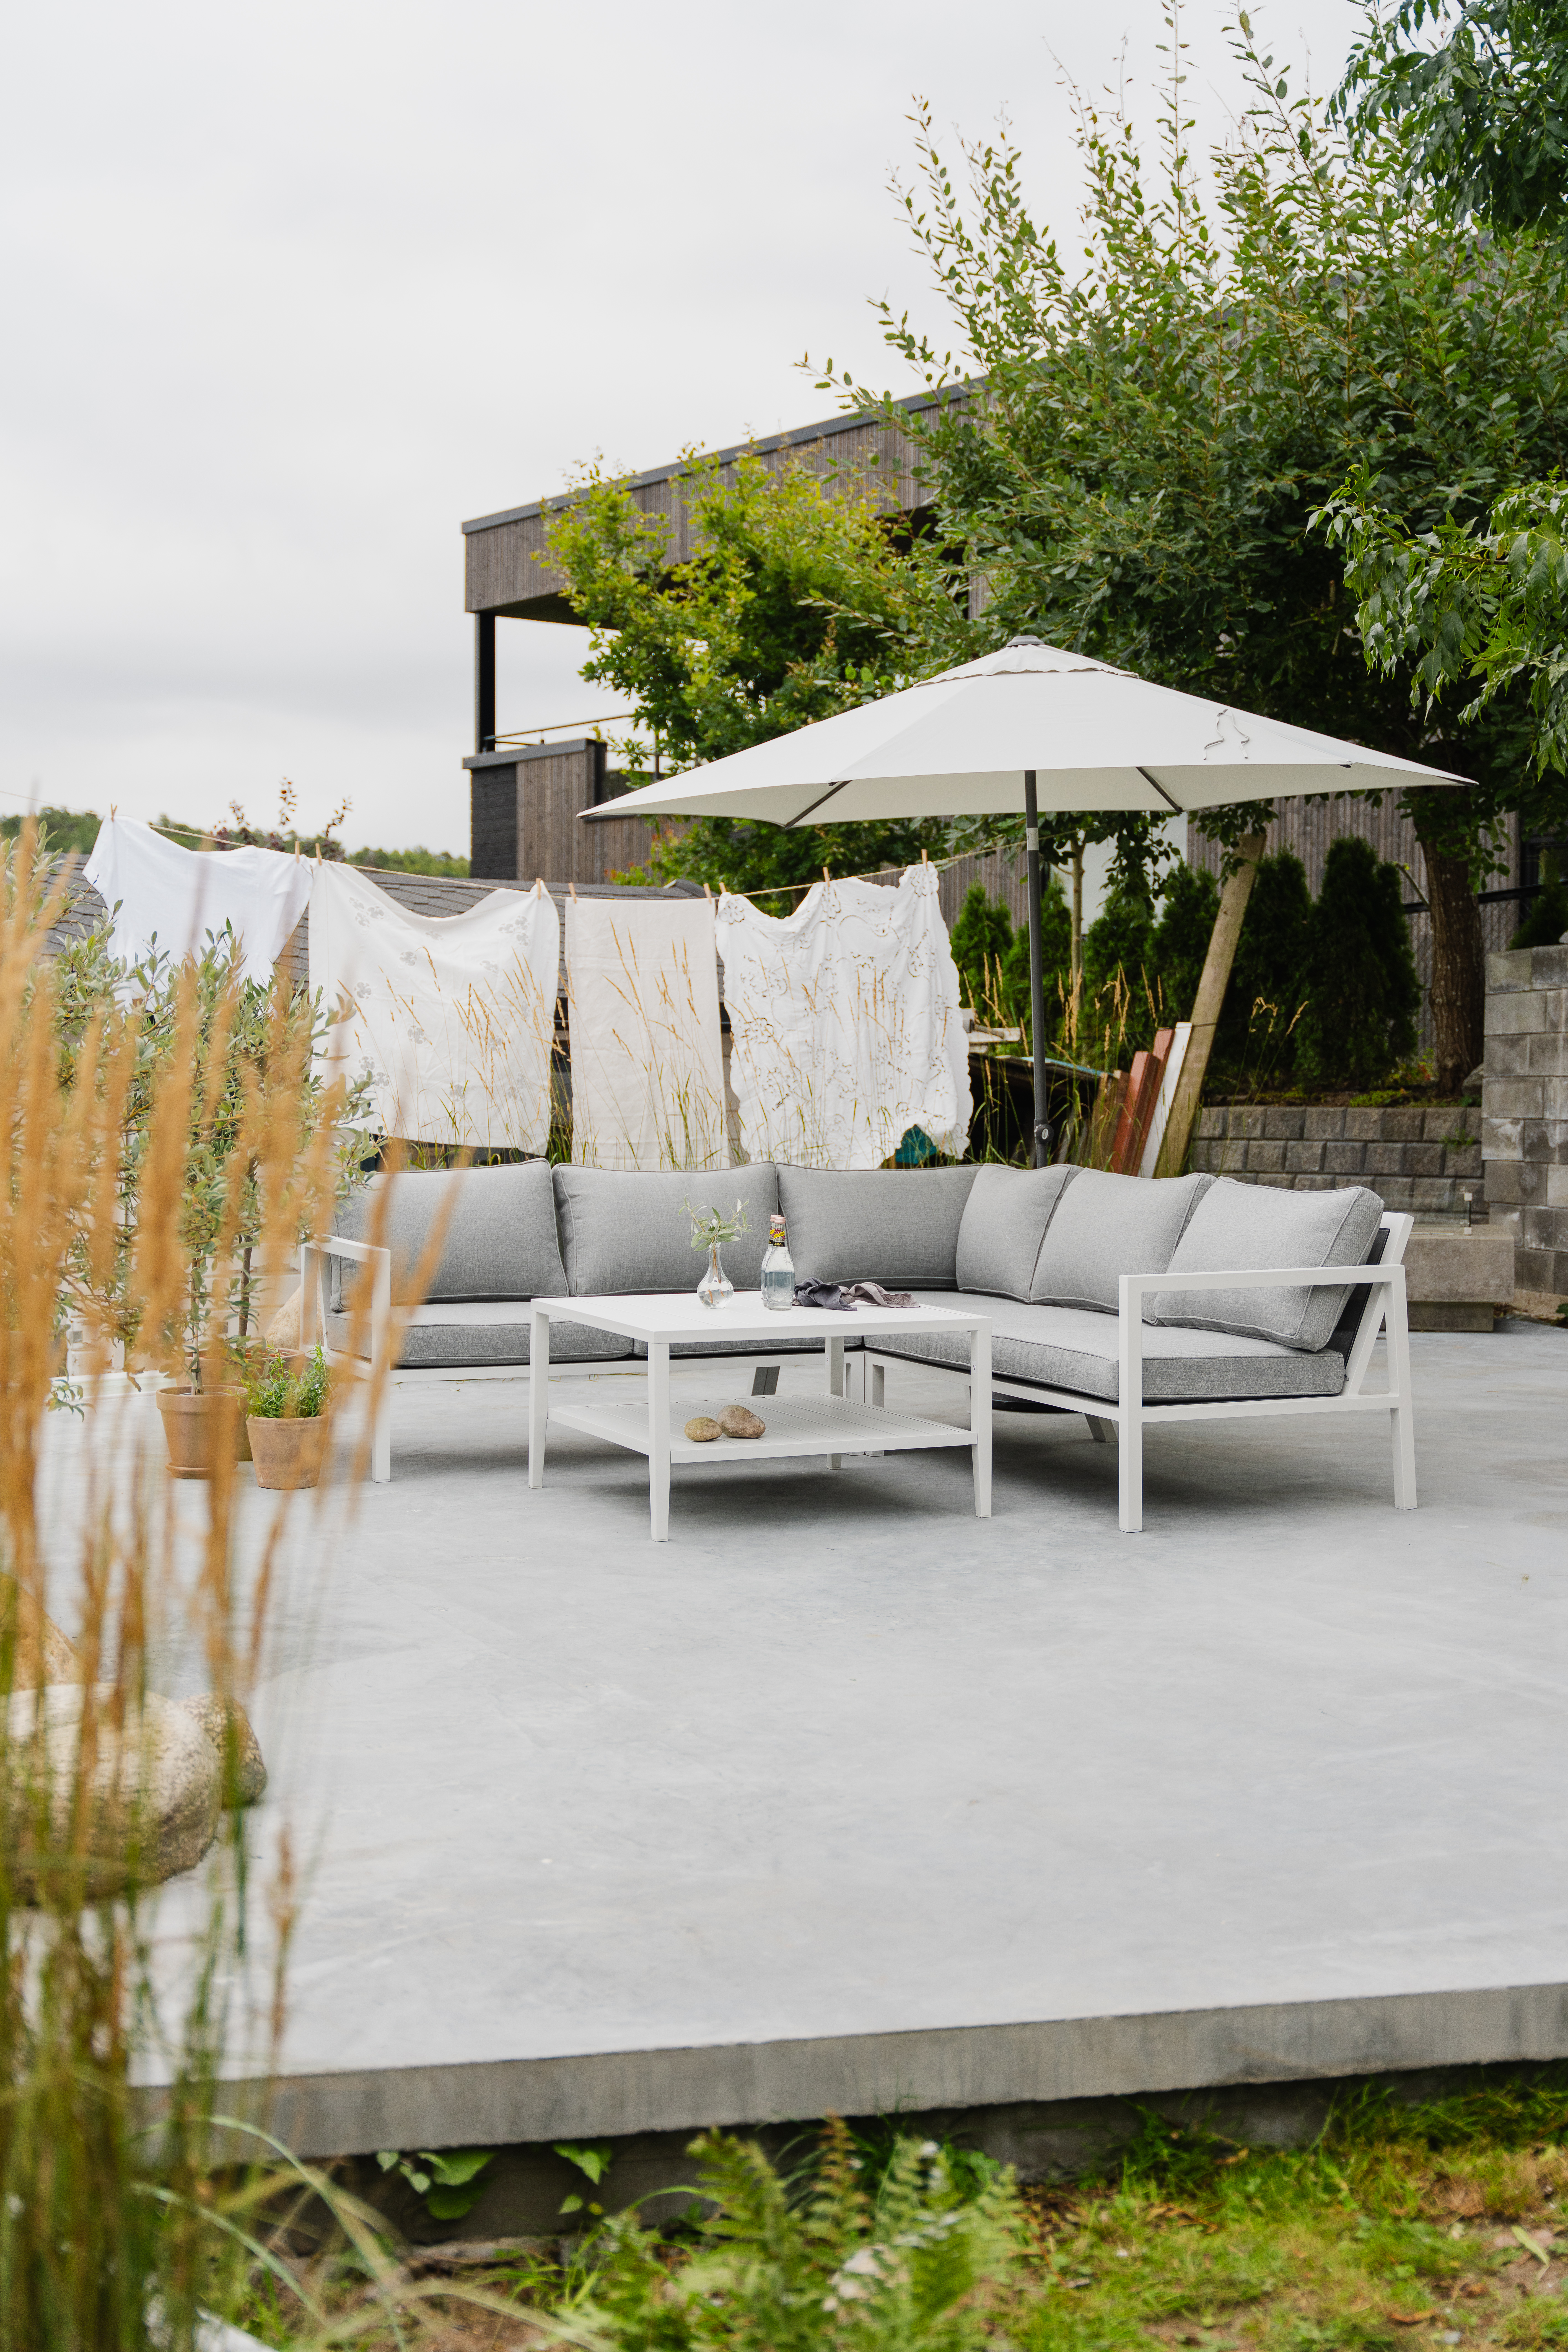 Belfort er en moderne loungemøbel gruppe med svært god sittekomfort. Den finnes i matt hvit eller matt sort aluminium